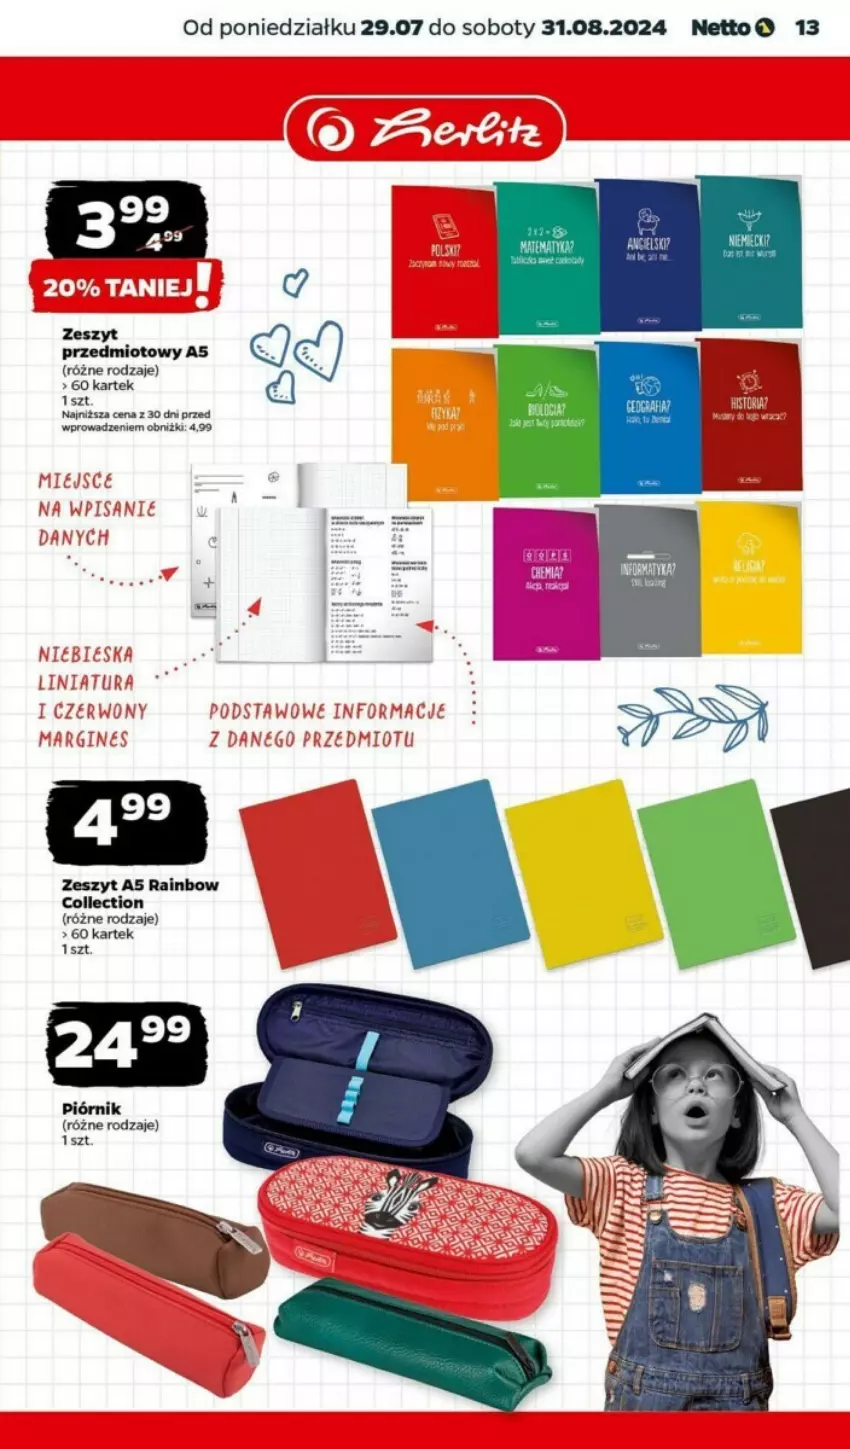 Gazetka promocyjna Netto - ważna 29.07 do 31.08.2024 - strona 5 - produkty: Piórnik